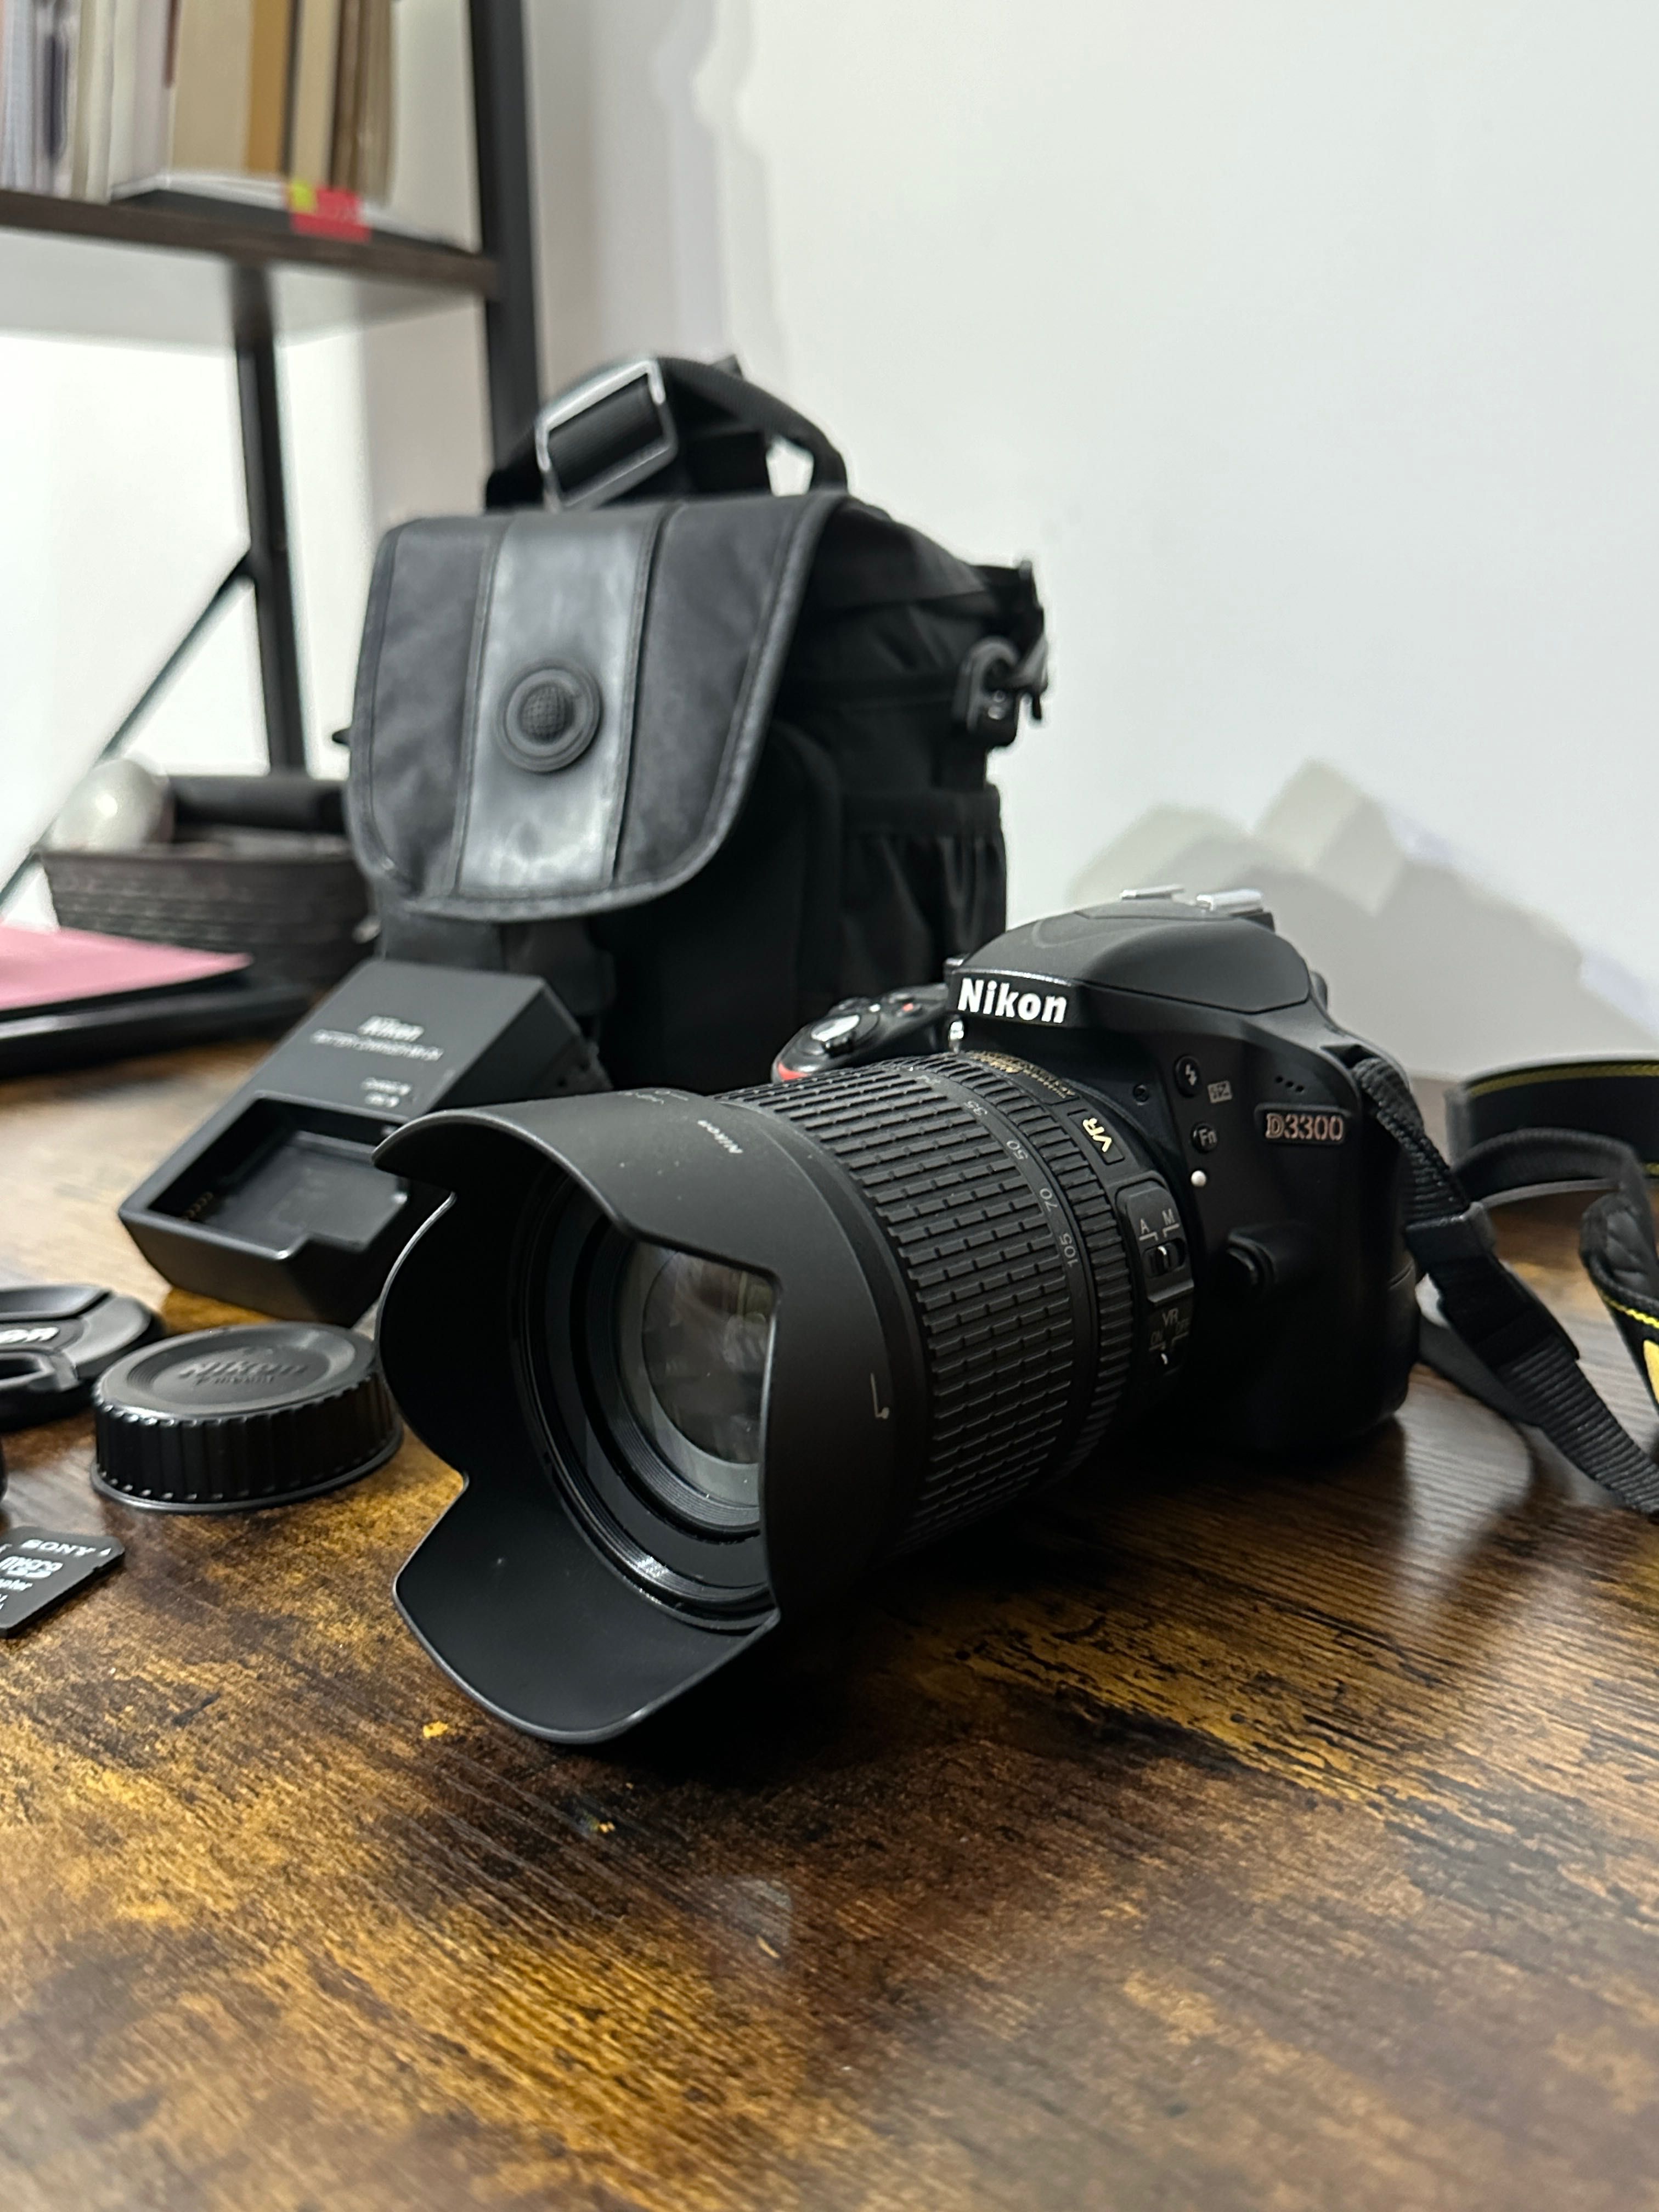 Wymienię Nikon d3300 z obiektywem(18-105) za to DJI OSMO pocket 2/3